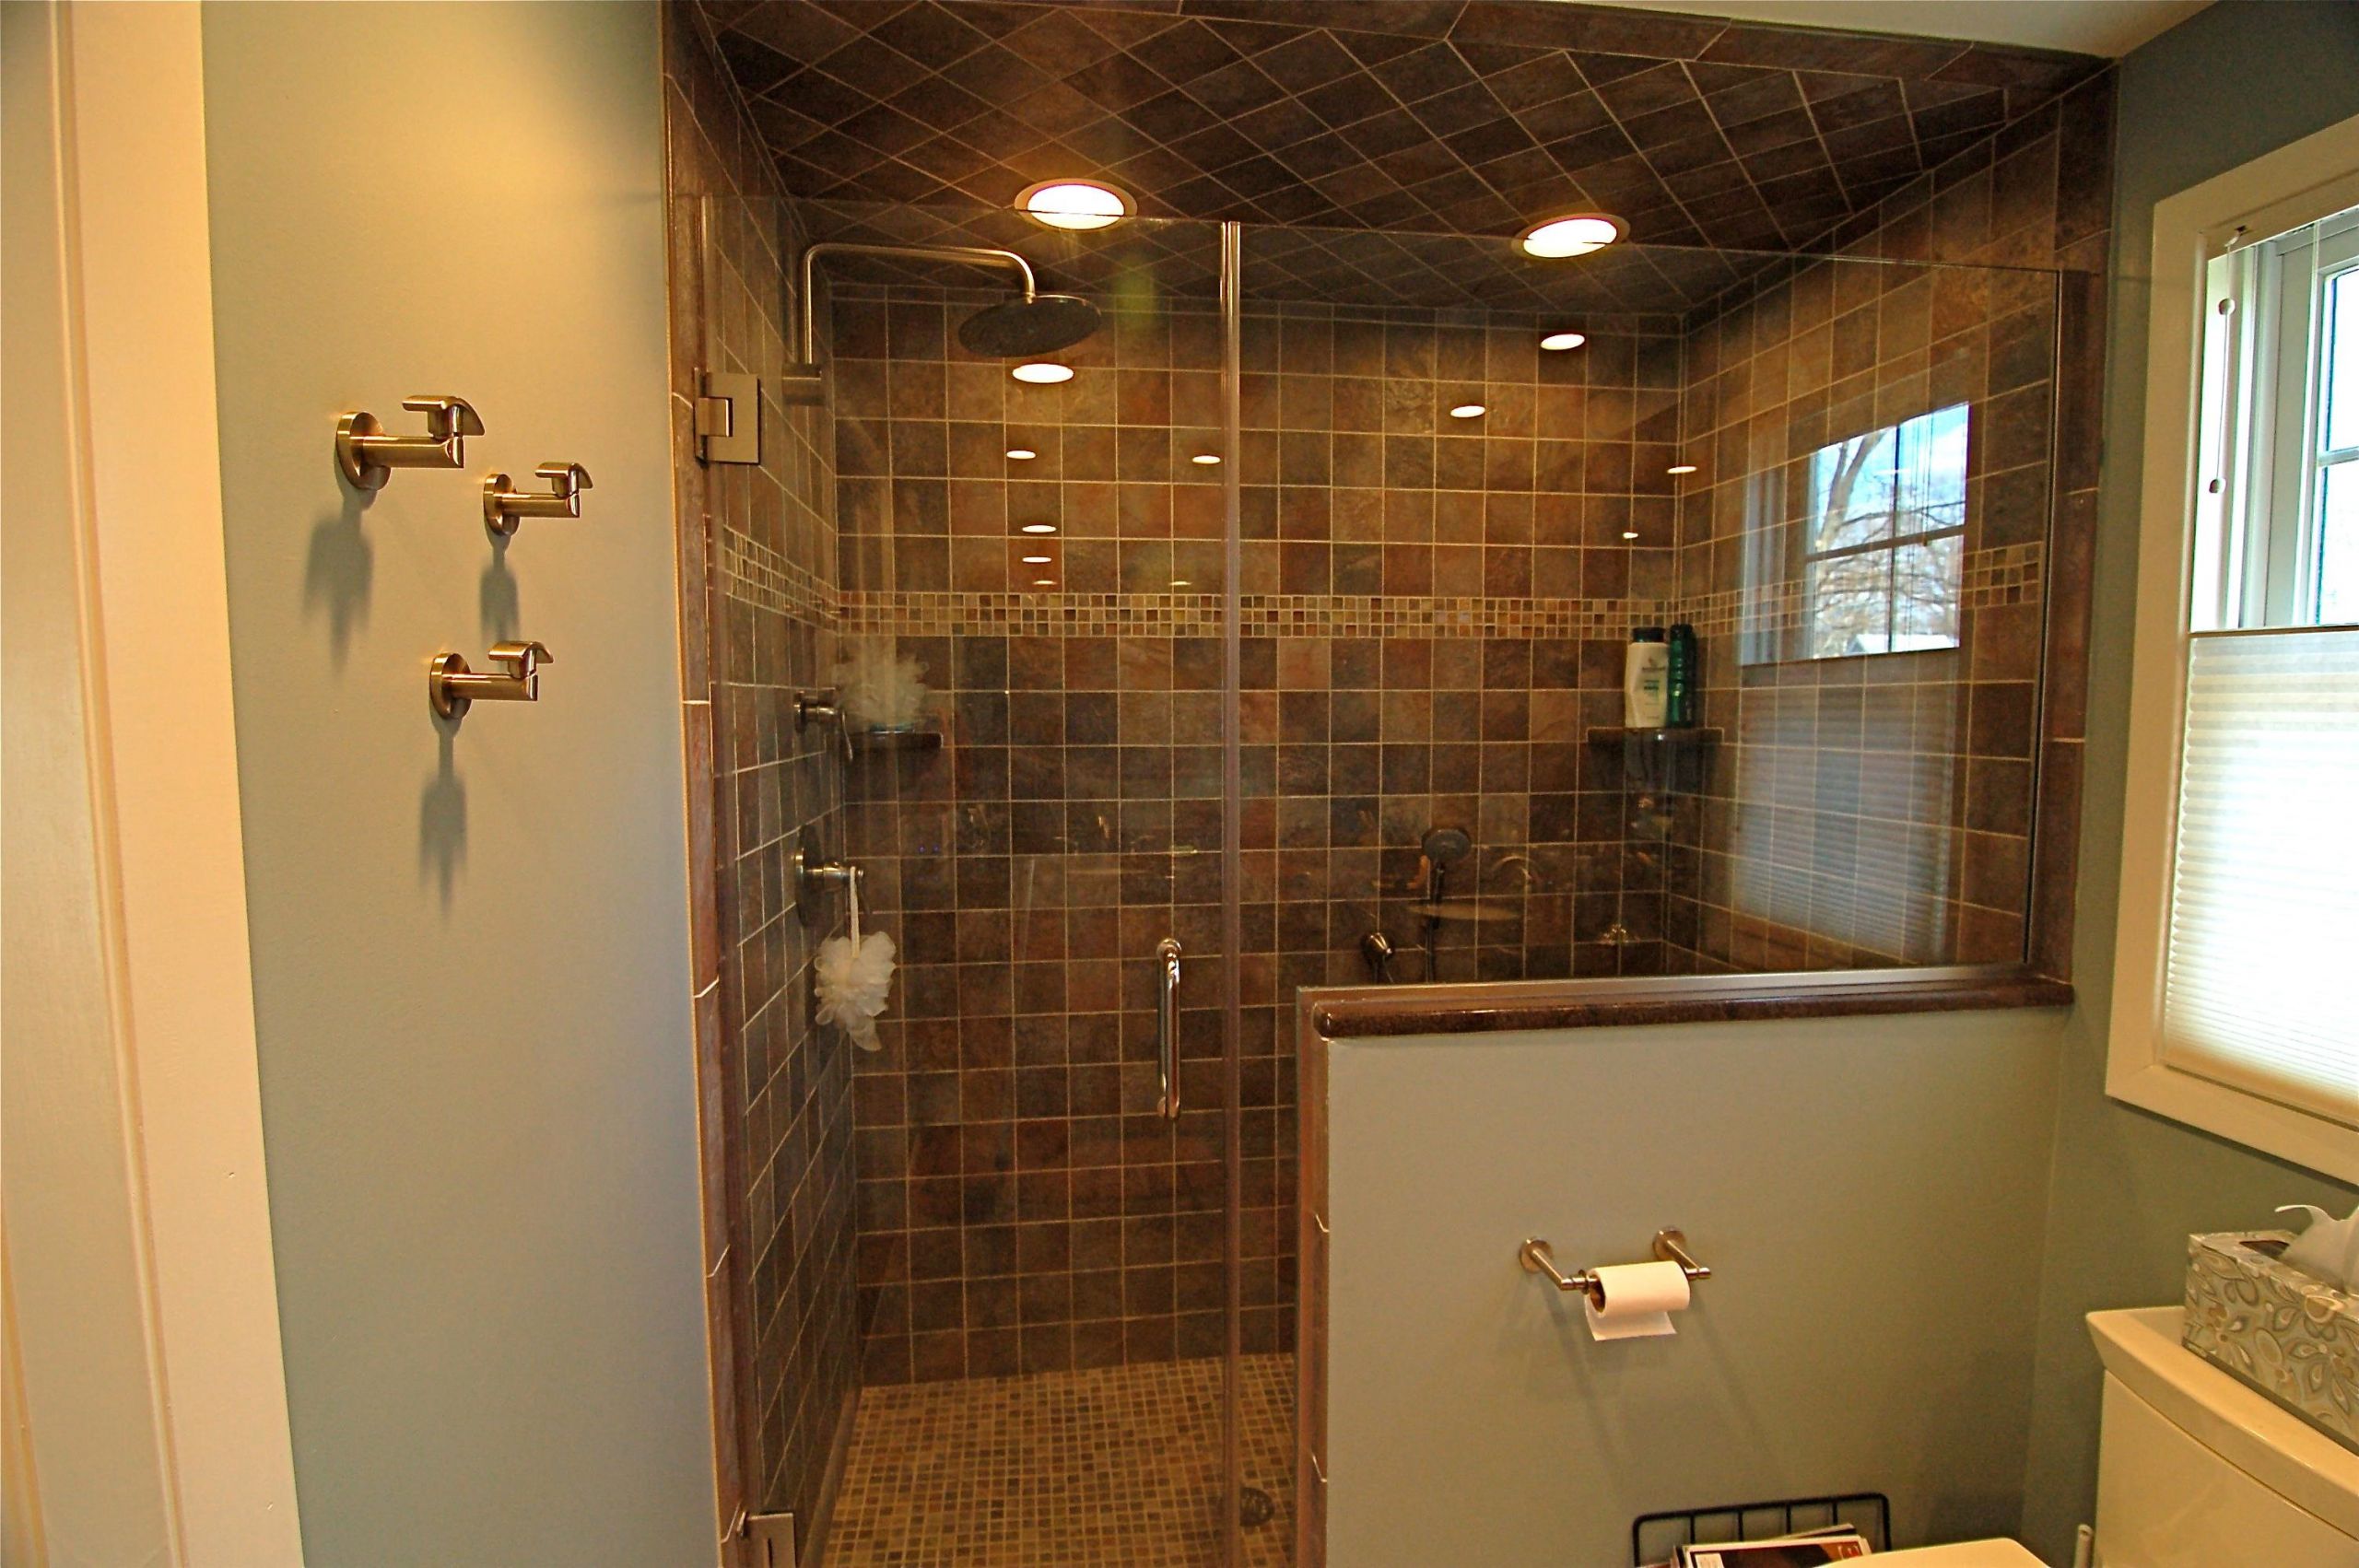 Doorless Shower For Small Bathroom
 Small Bathroom Open Shower With Nice Doorless Master